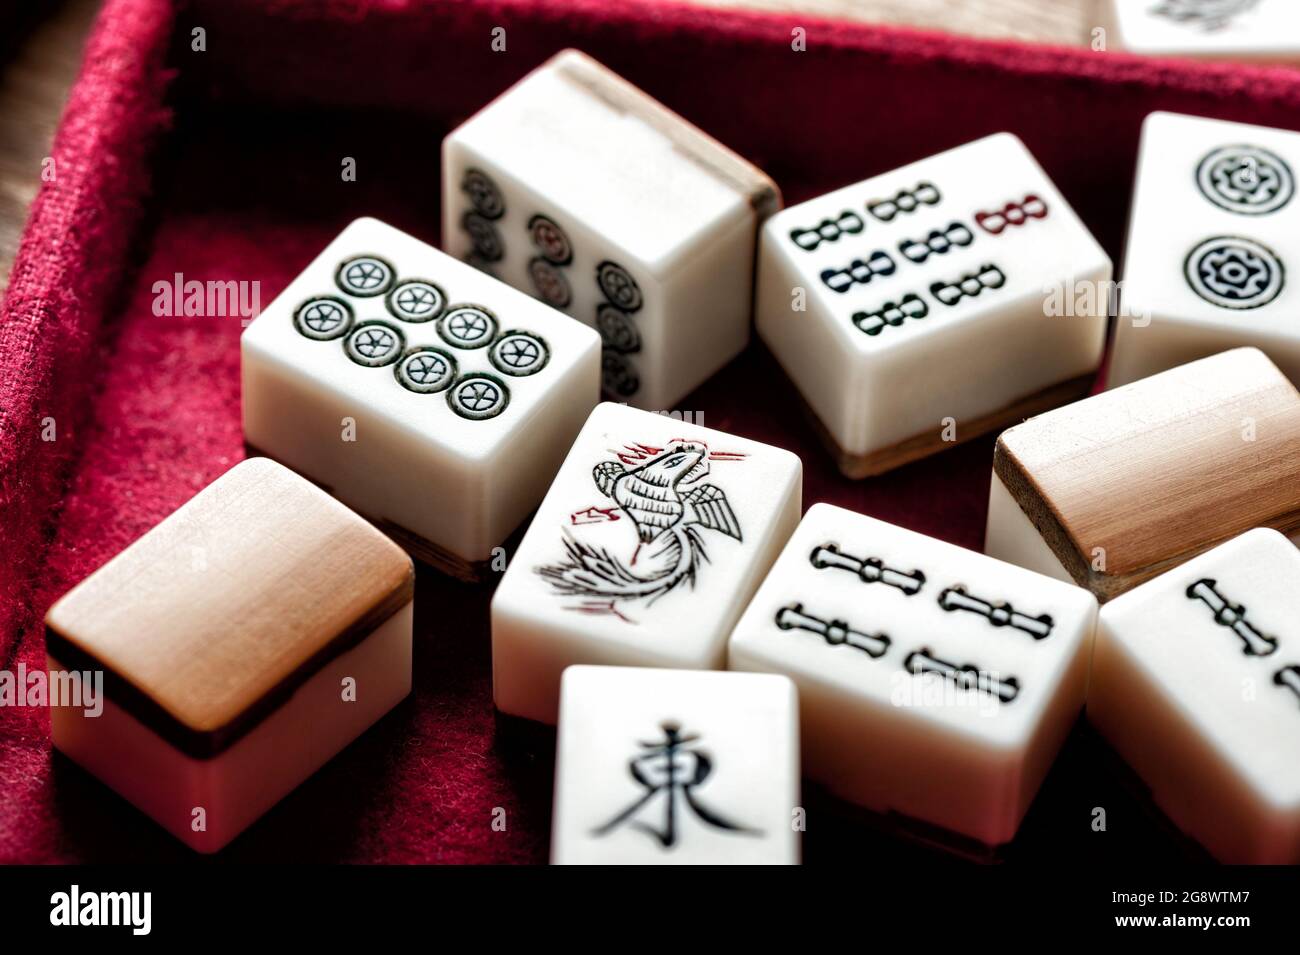 Ausrüstungen für Mahjong Spiel. Mahjong ist das alte asiatische Brettspiel  Stockfotografie - Alamy